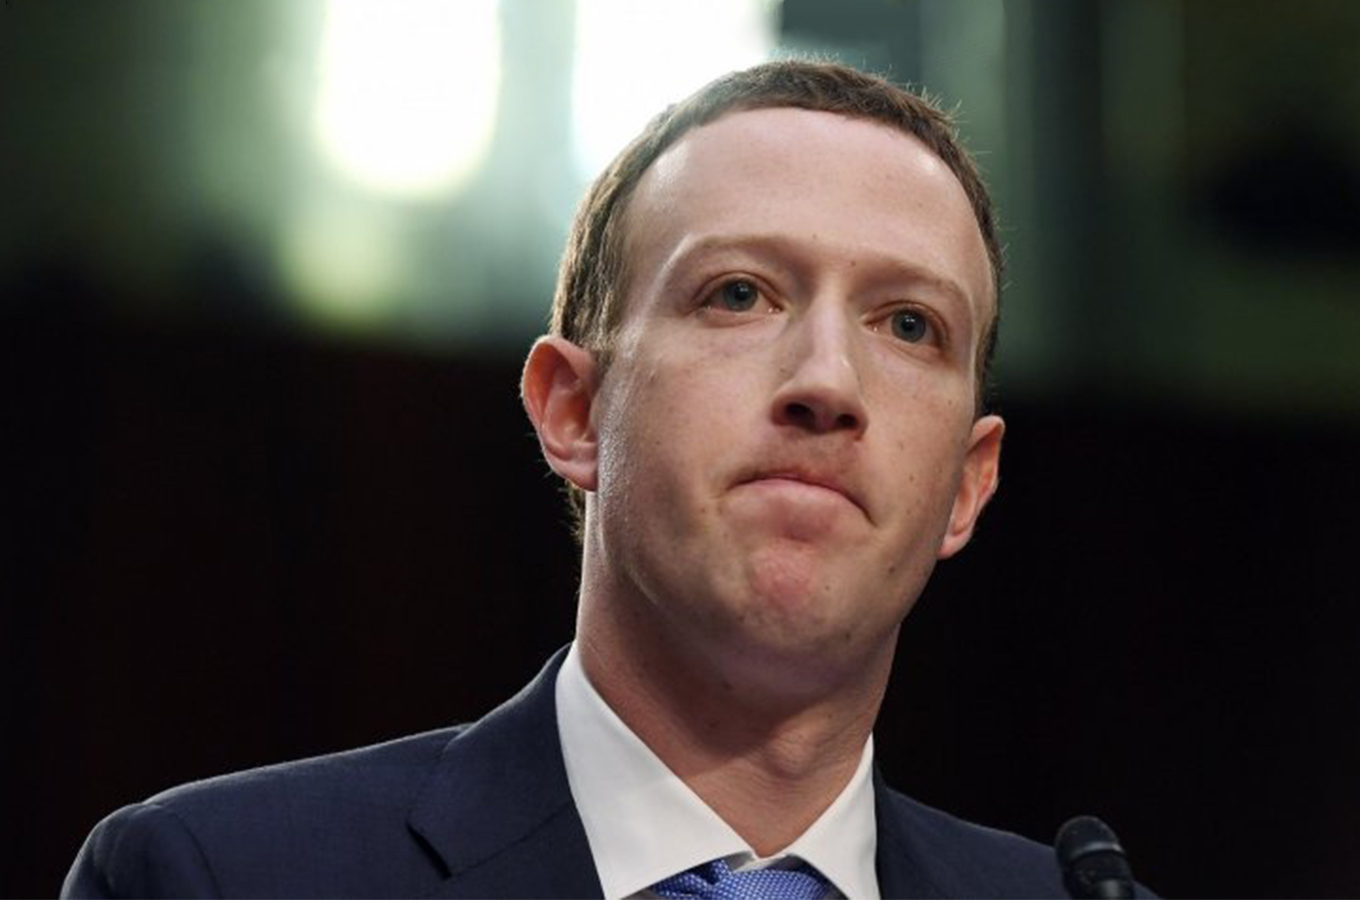 Цукерберг, не раскачивай лодку: Facebook как угроза тоталитарного добра